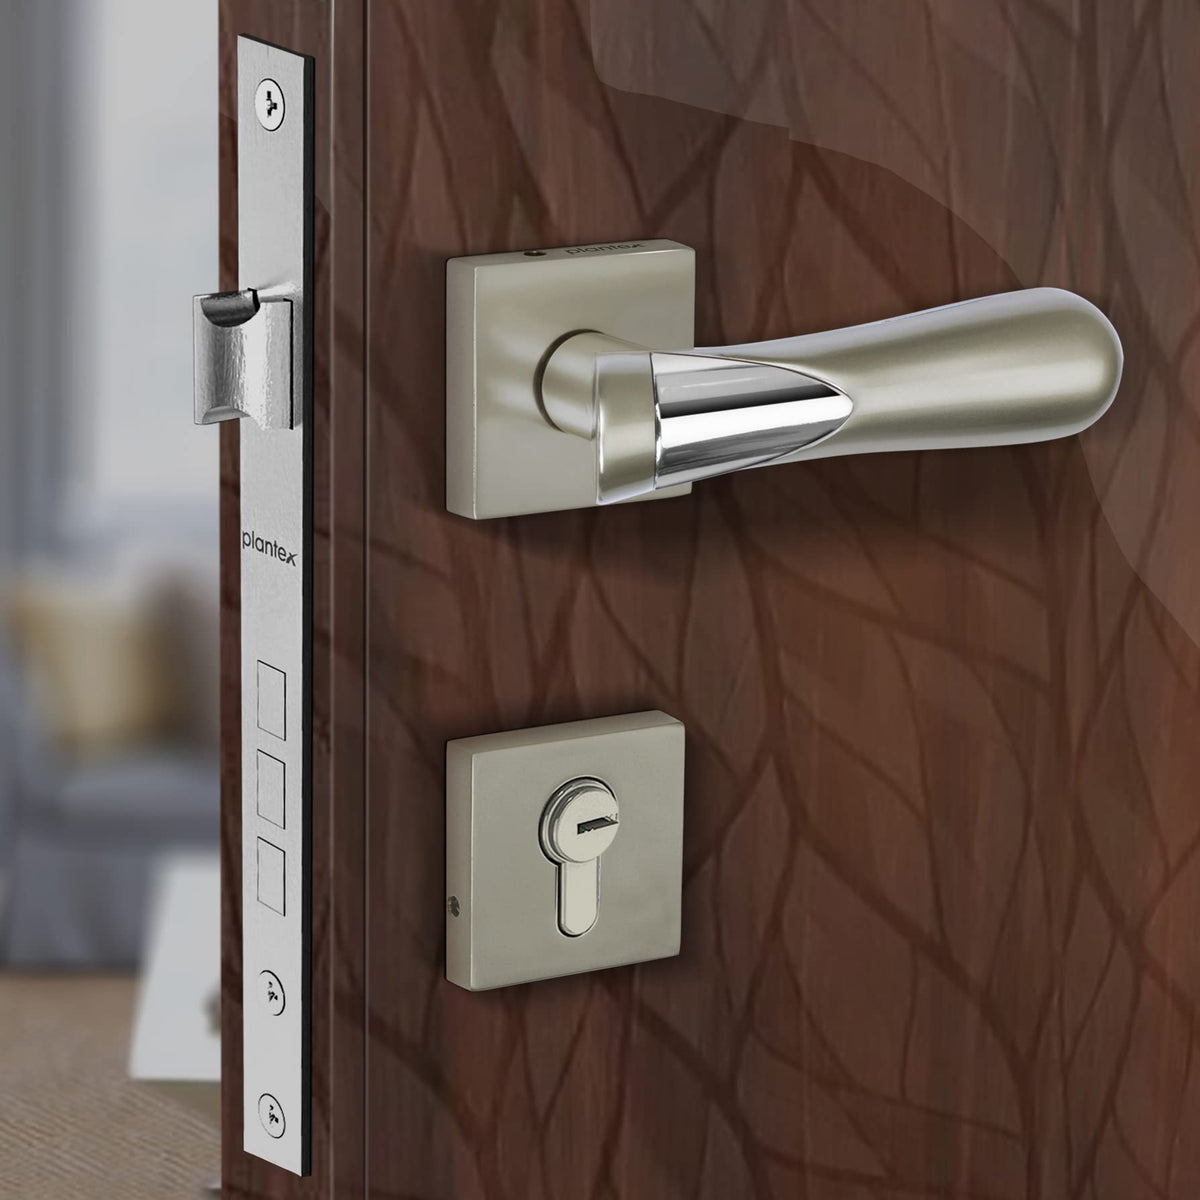 Plantex Heavy Duty Door Lock - Main Door Lock Set with 3 Keys/Mortise Door Lock for Home/Office/Hotel (593 - Satin Chrome)